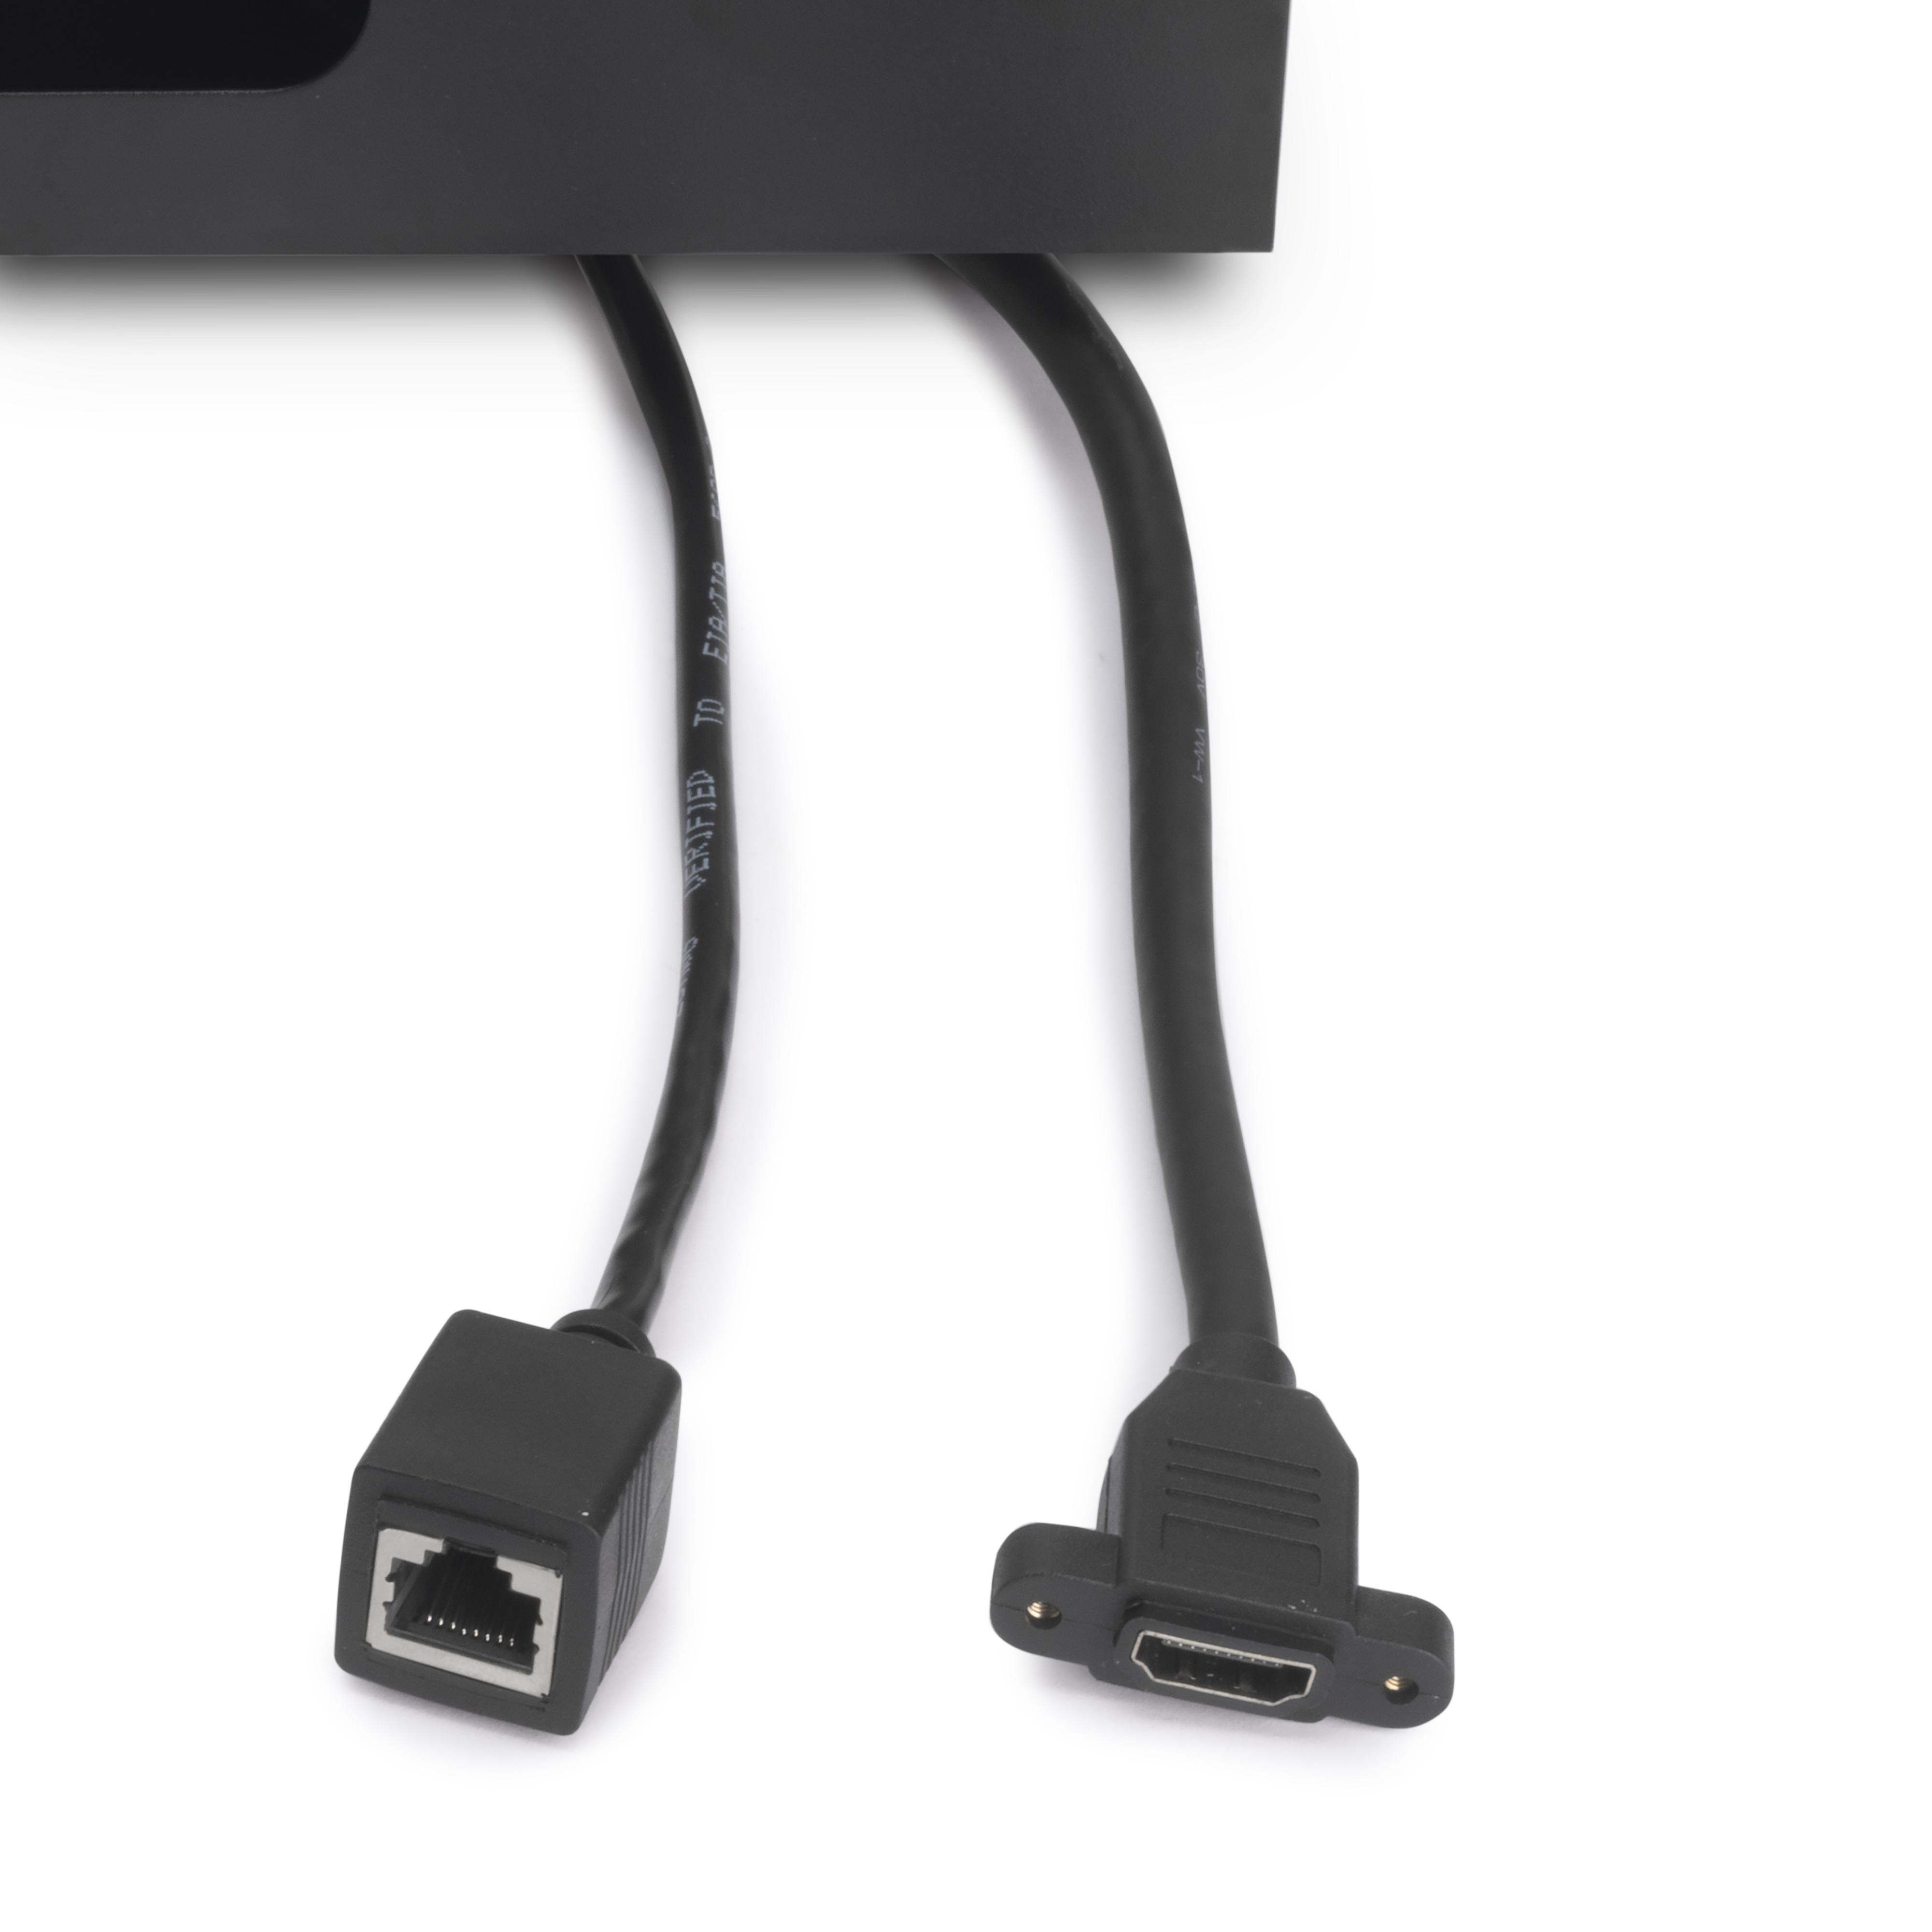 Enchufe empotrable con 2 USB, enchufe empotrado en la mesa con 1